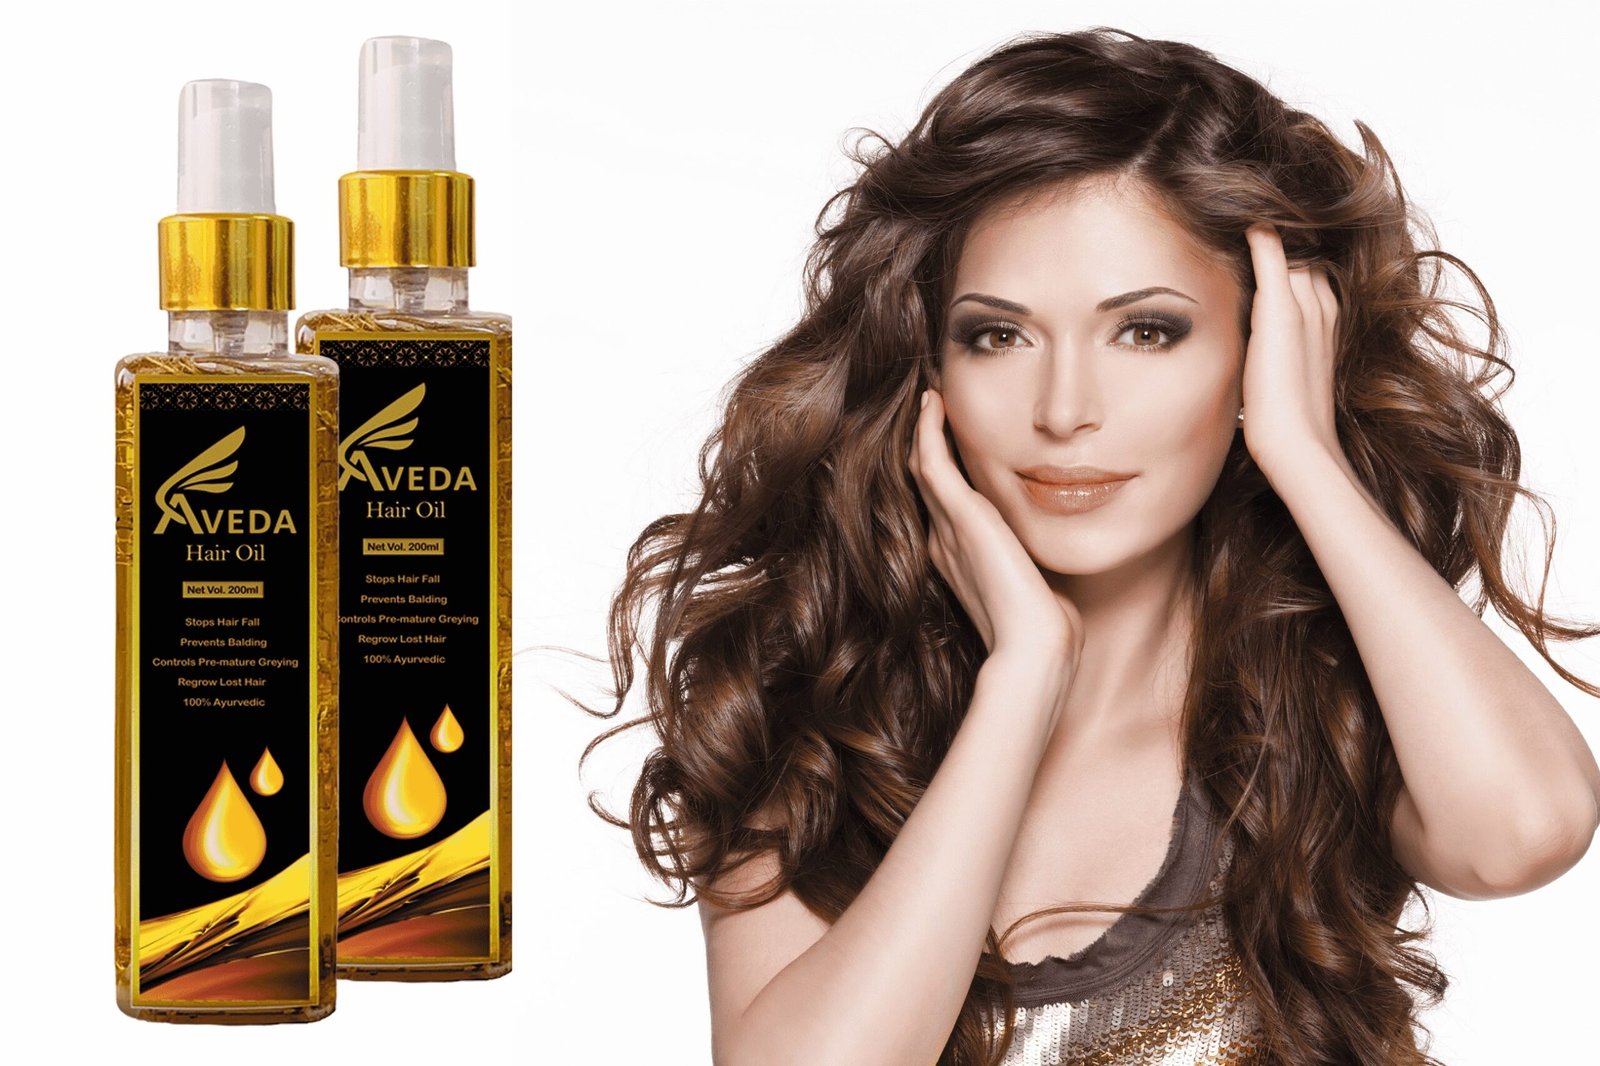 Aveda Hair Oil Guide | Best Hair Growth Oil For Men & Women